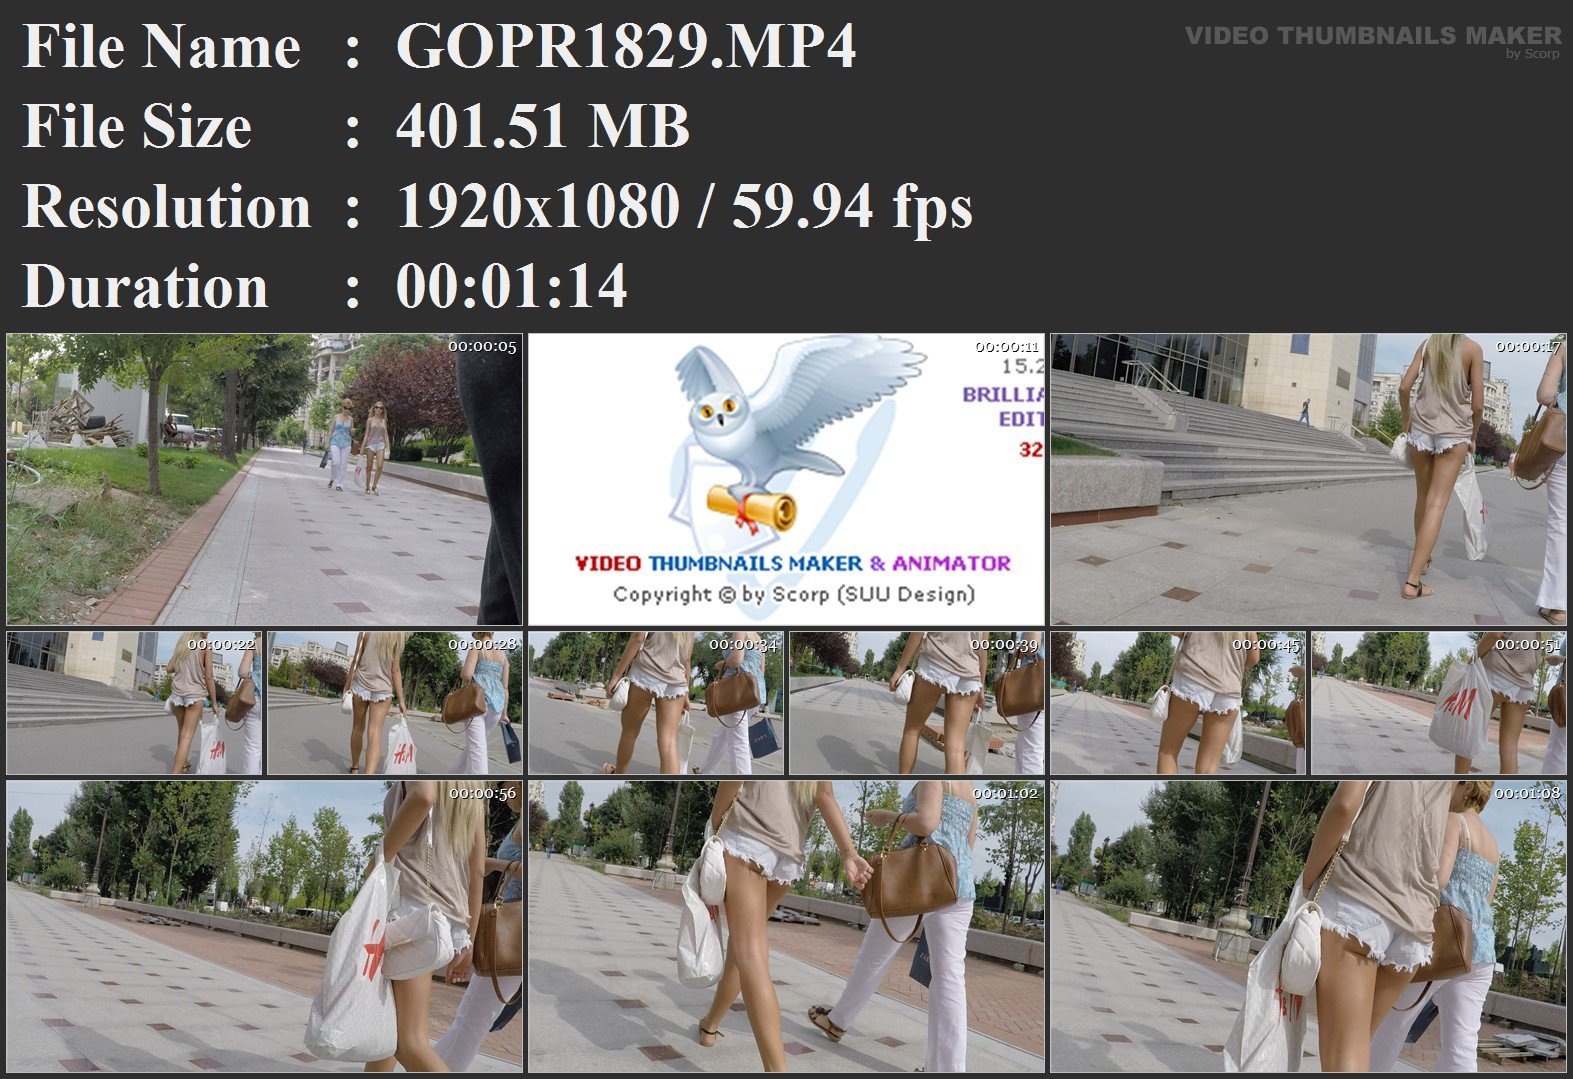 GOPR1829.MP4.jpg